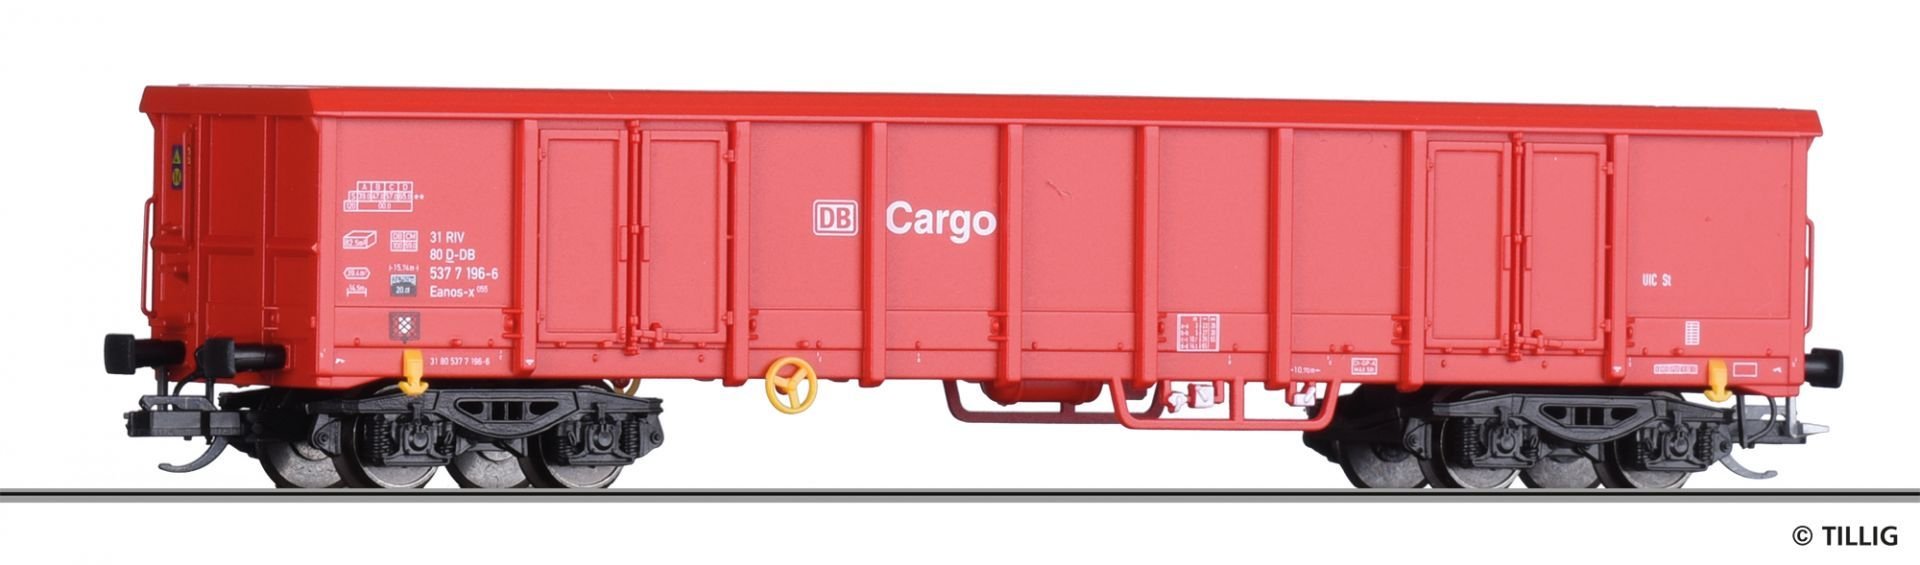 Tillig TT offener Güterwagen Eanos DB Cargo 15699